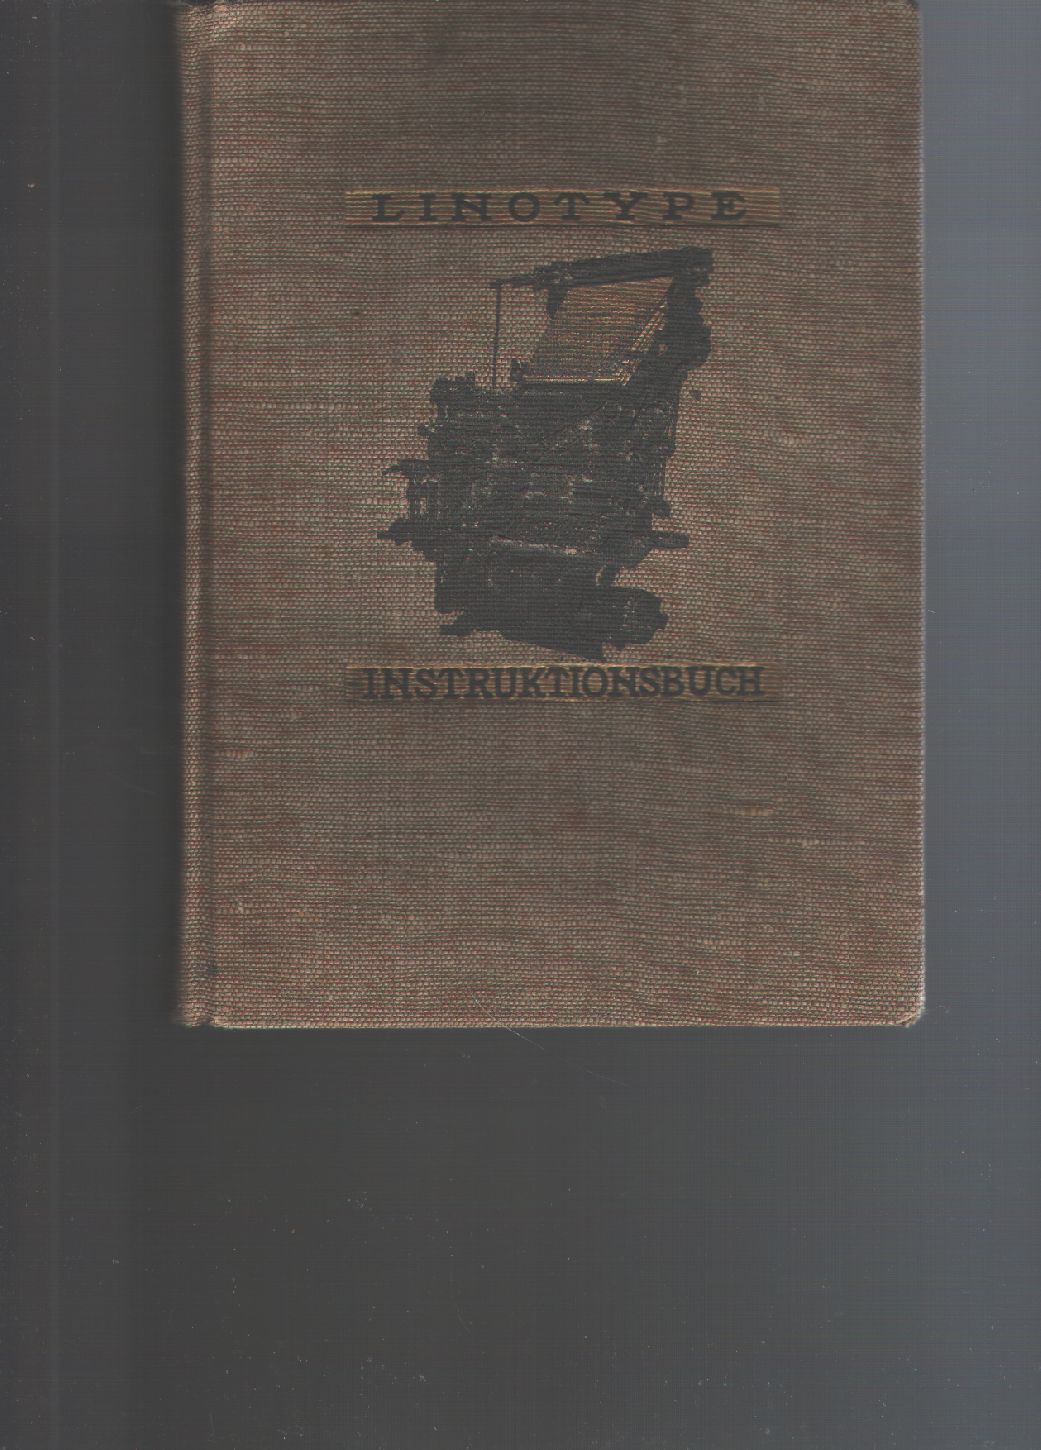 Mergenthaler Setzmaschinen Fabrik  Linotype - Instruktionsbuch  Ausführliche Beschreibung der Arbeitsweise der verschiedenen Linotype-Modelle, ihrer Bedienung, Behandlung und Pflege 